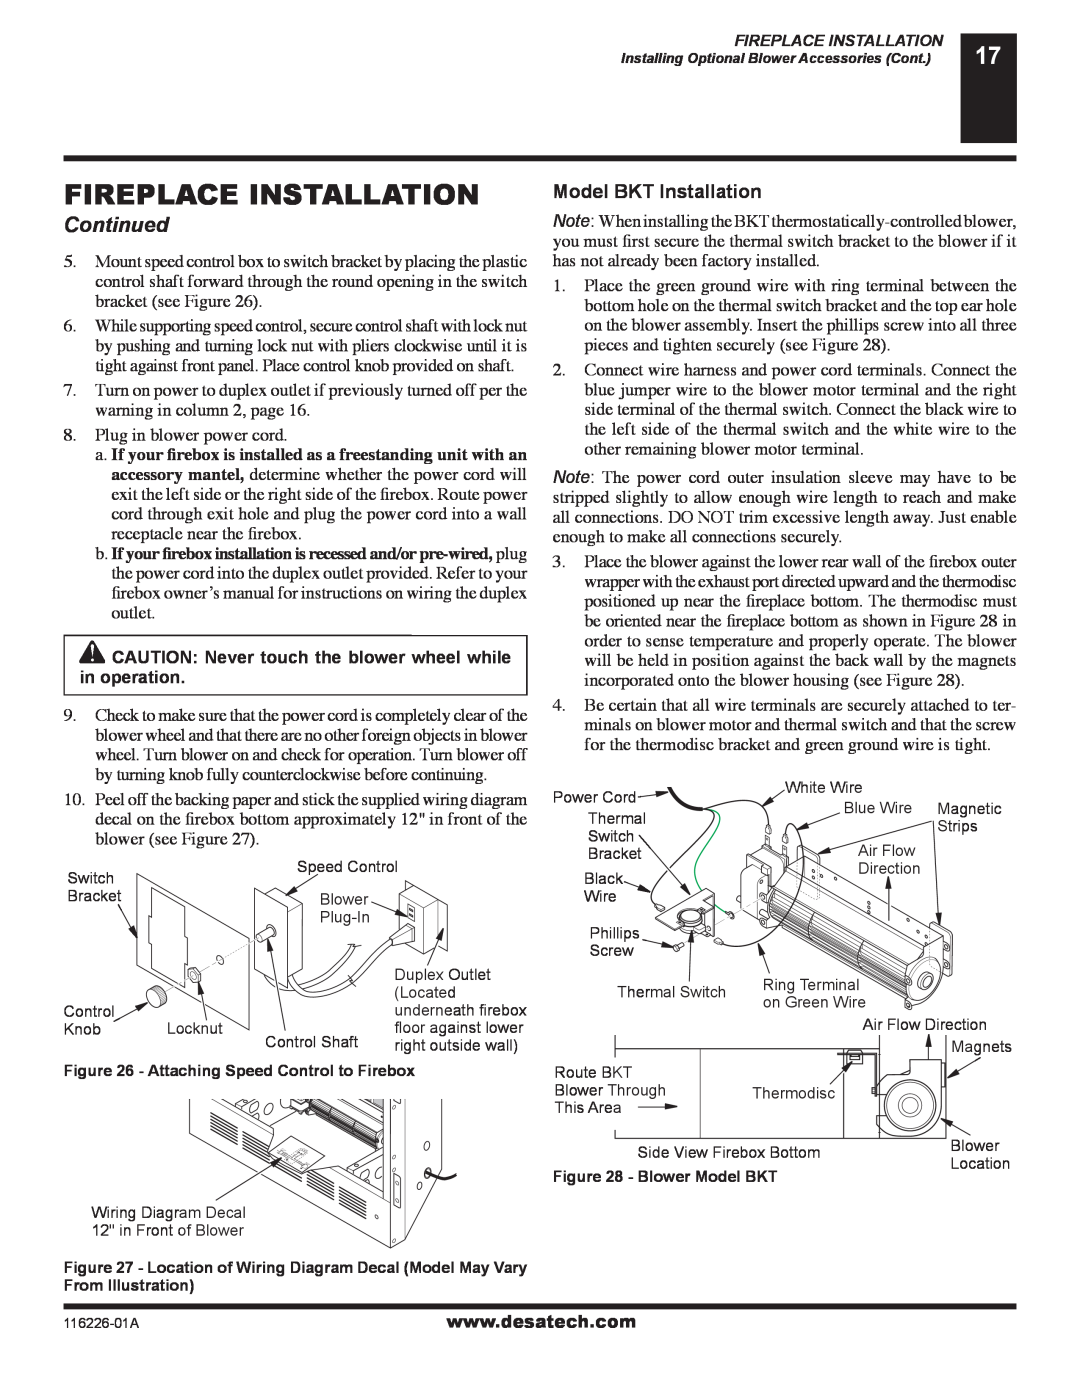 Desa (V)KC36P, (V)KC36N installation manual Model BKT Installation, Fireplace Installation, Continued 